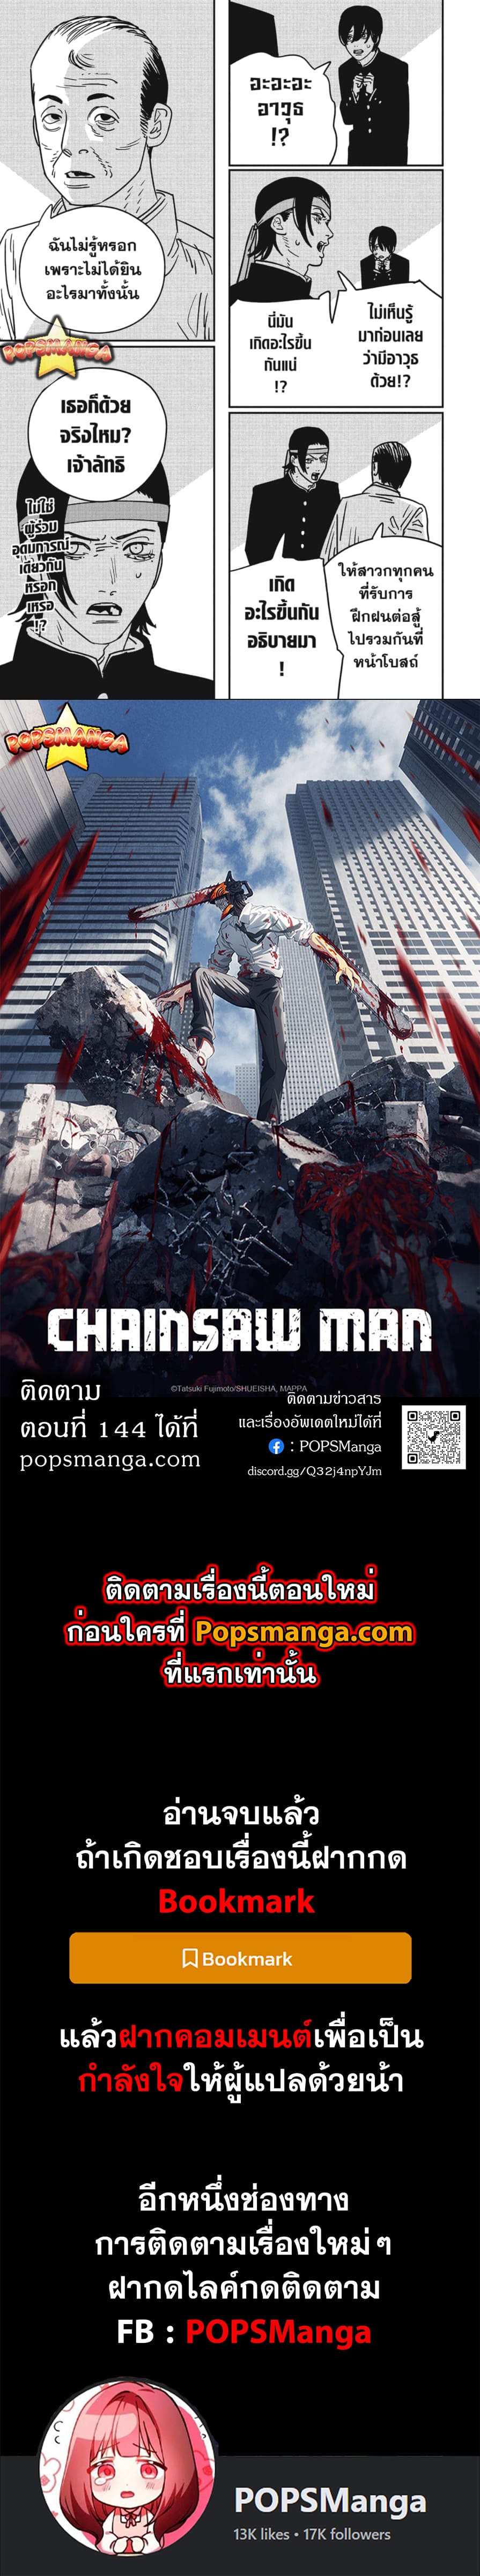 chainsaw man 143.14